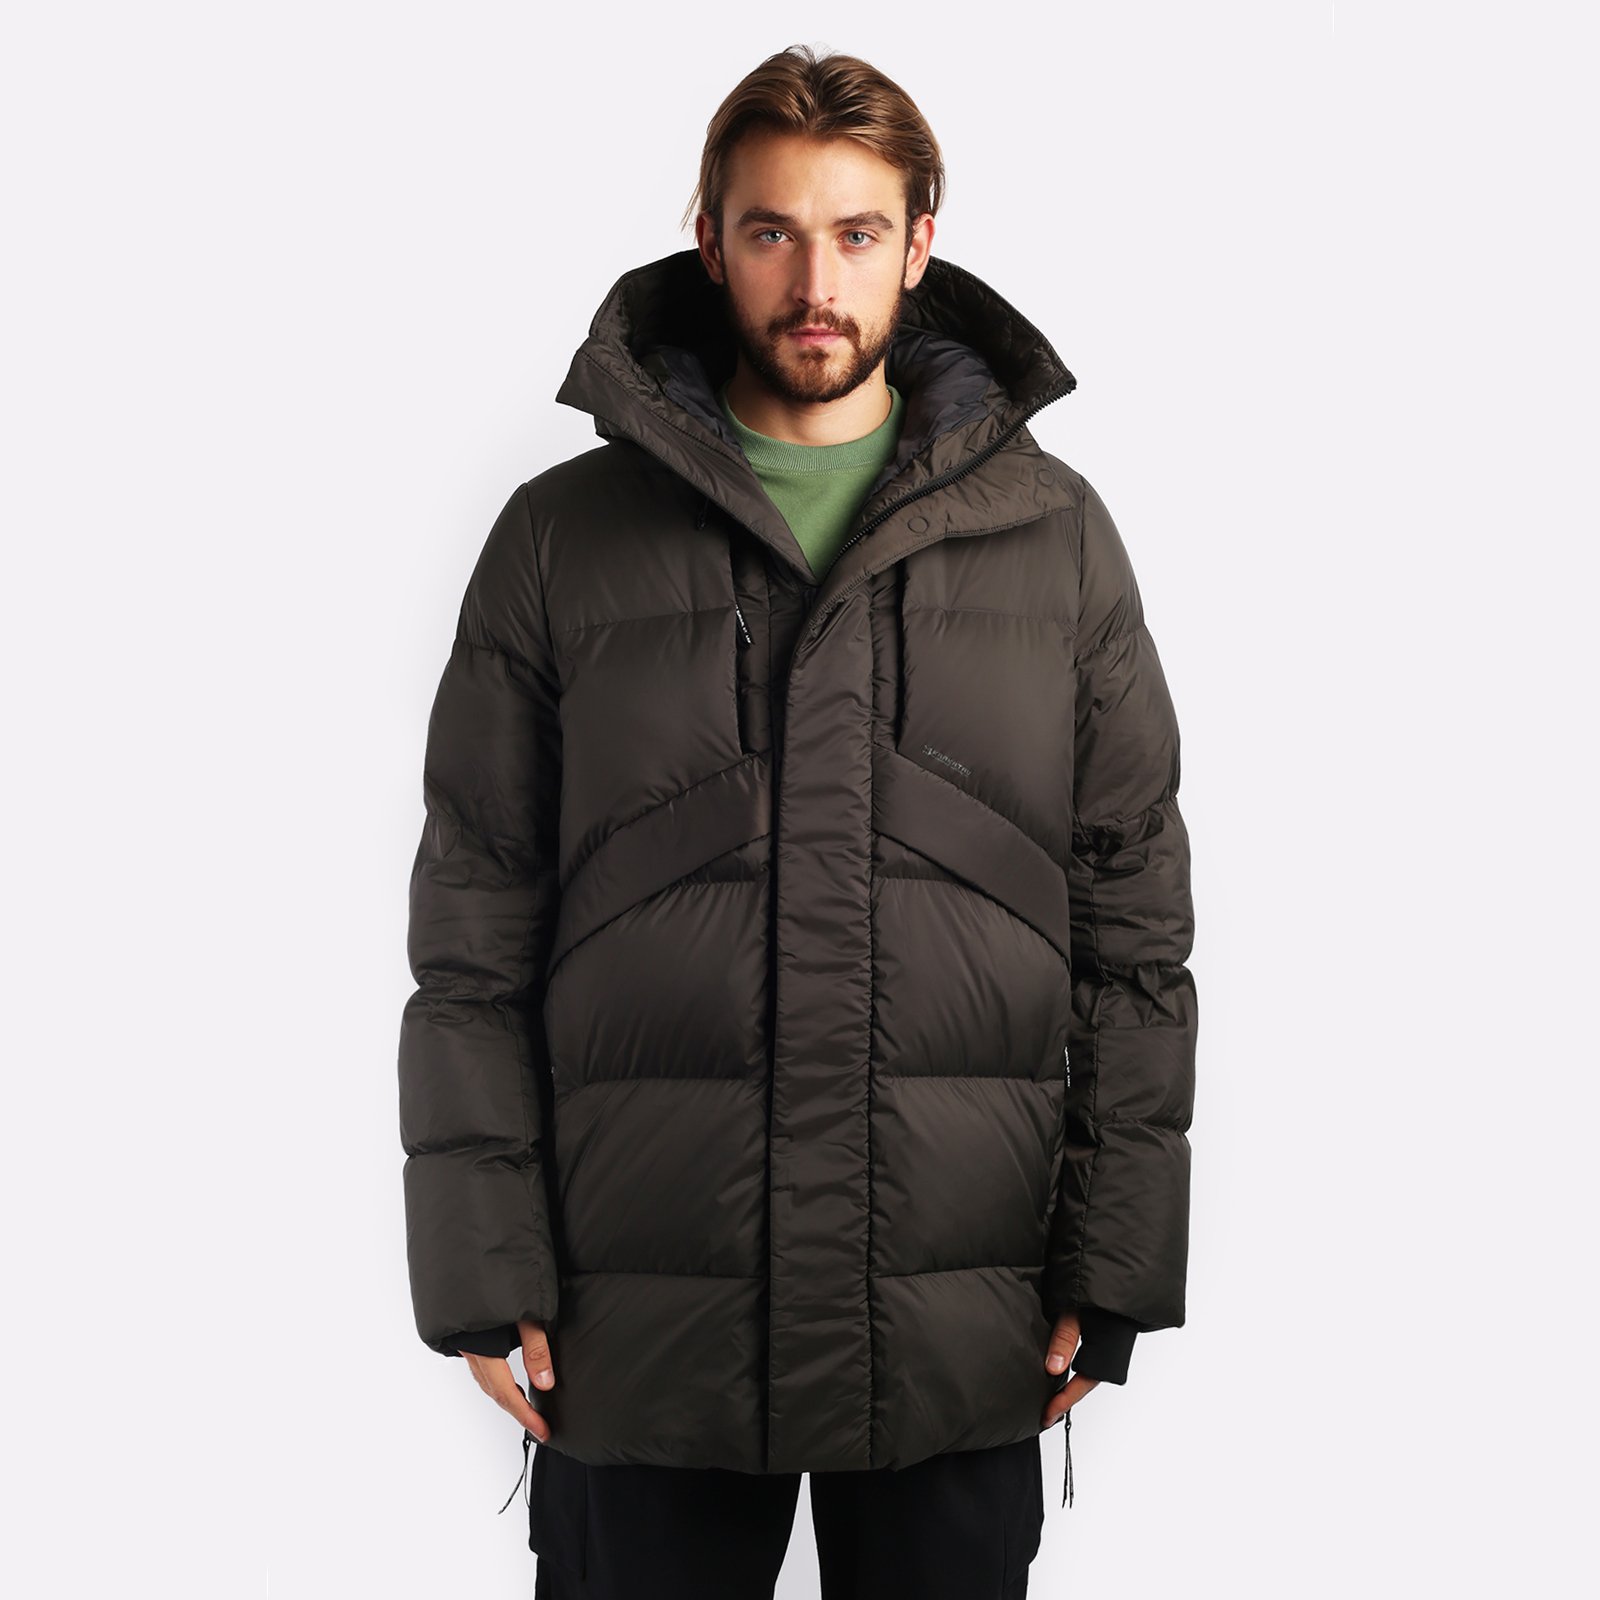 мужская куртка KRAKATAU Aitken  (Qm437-59-коф/зел)  - цена, описание, фото 1